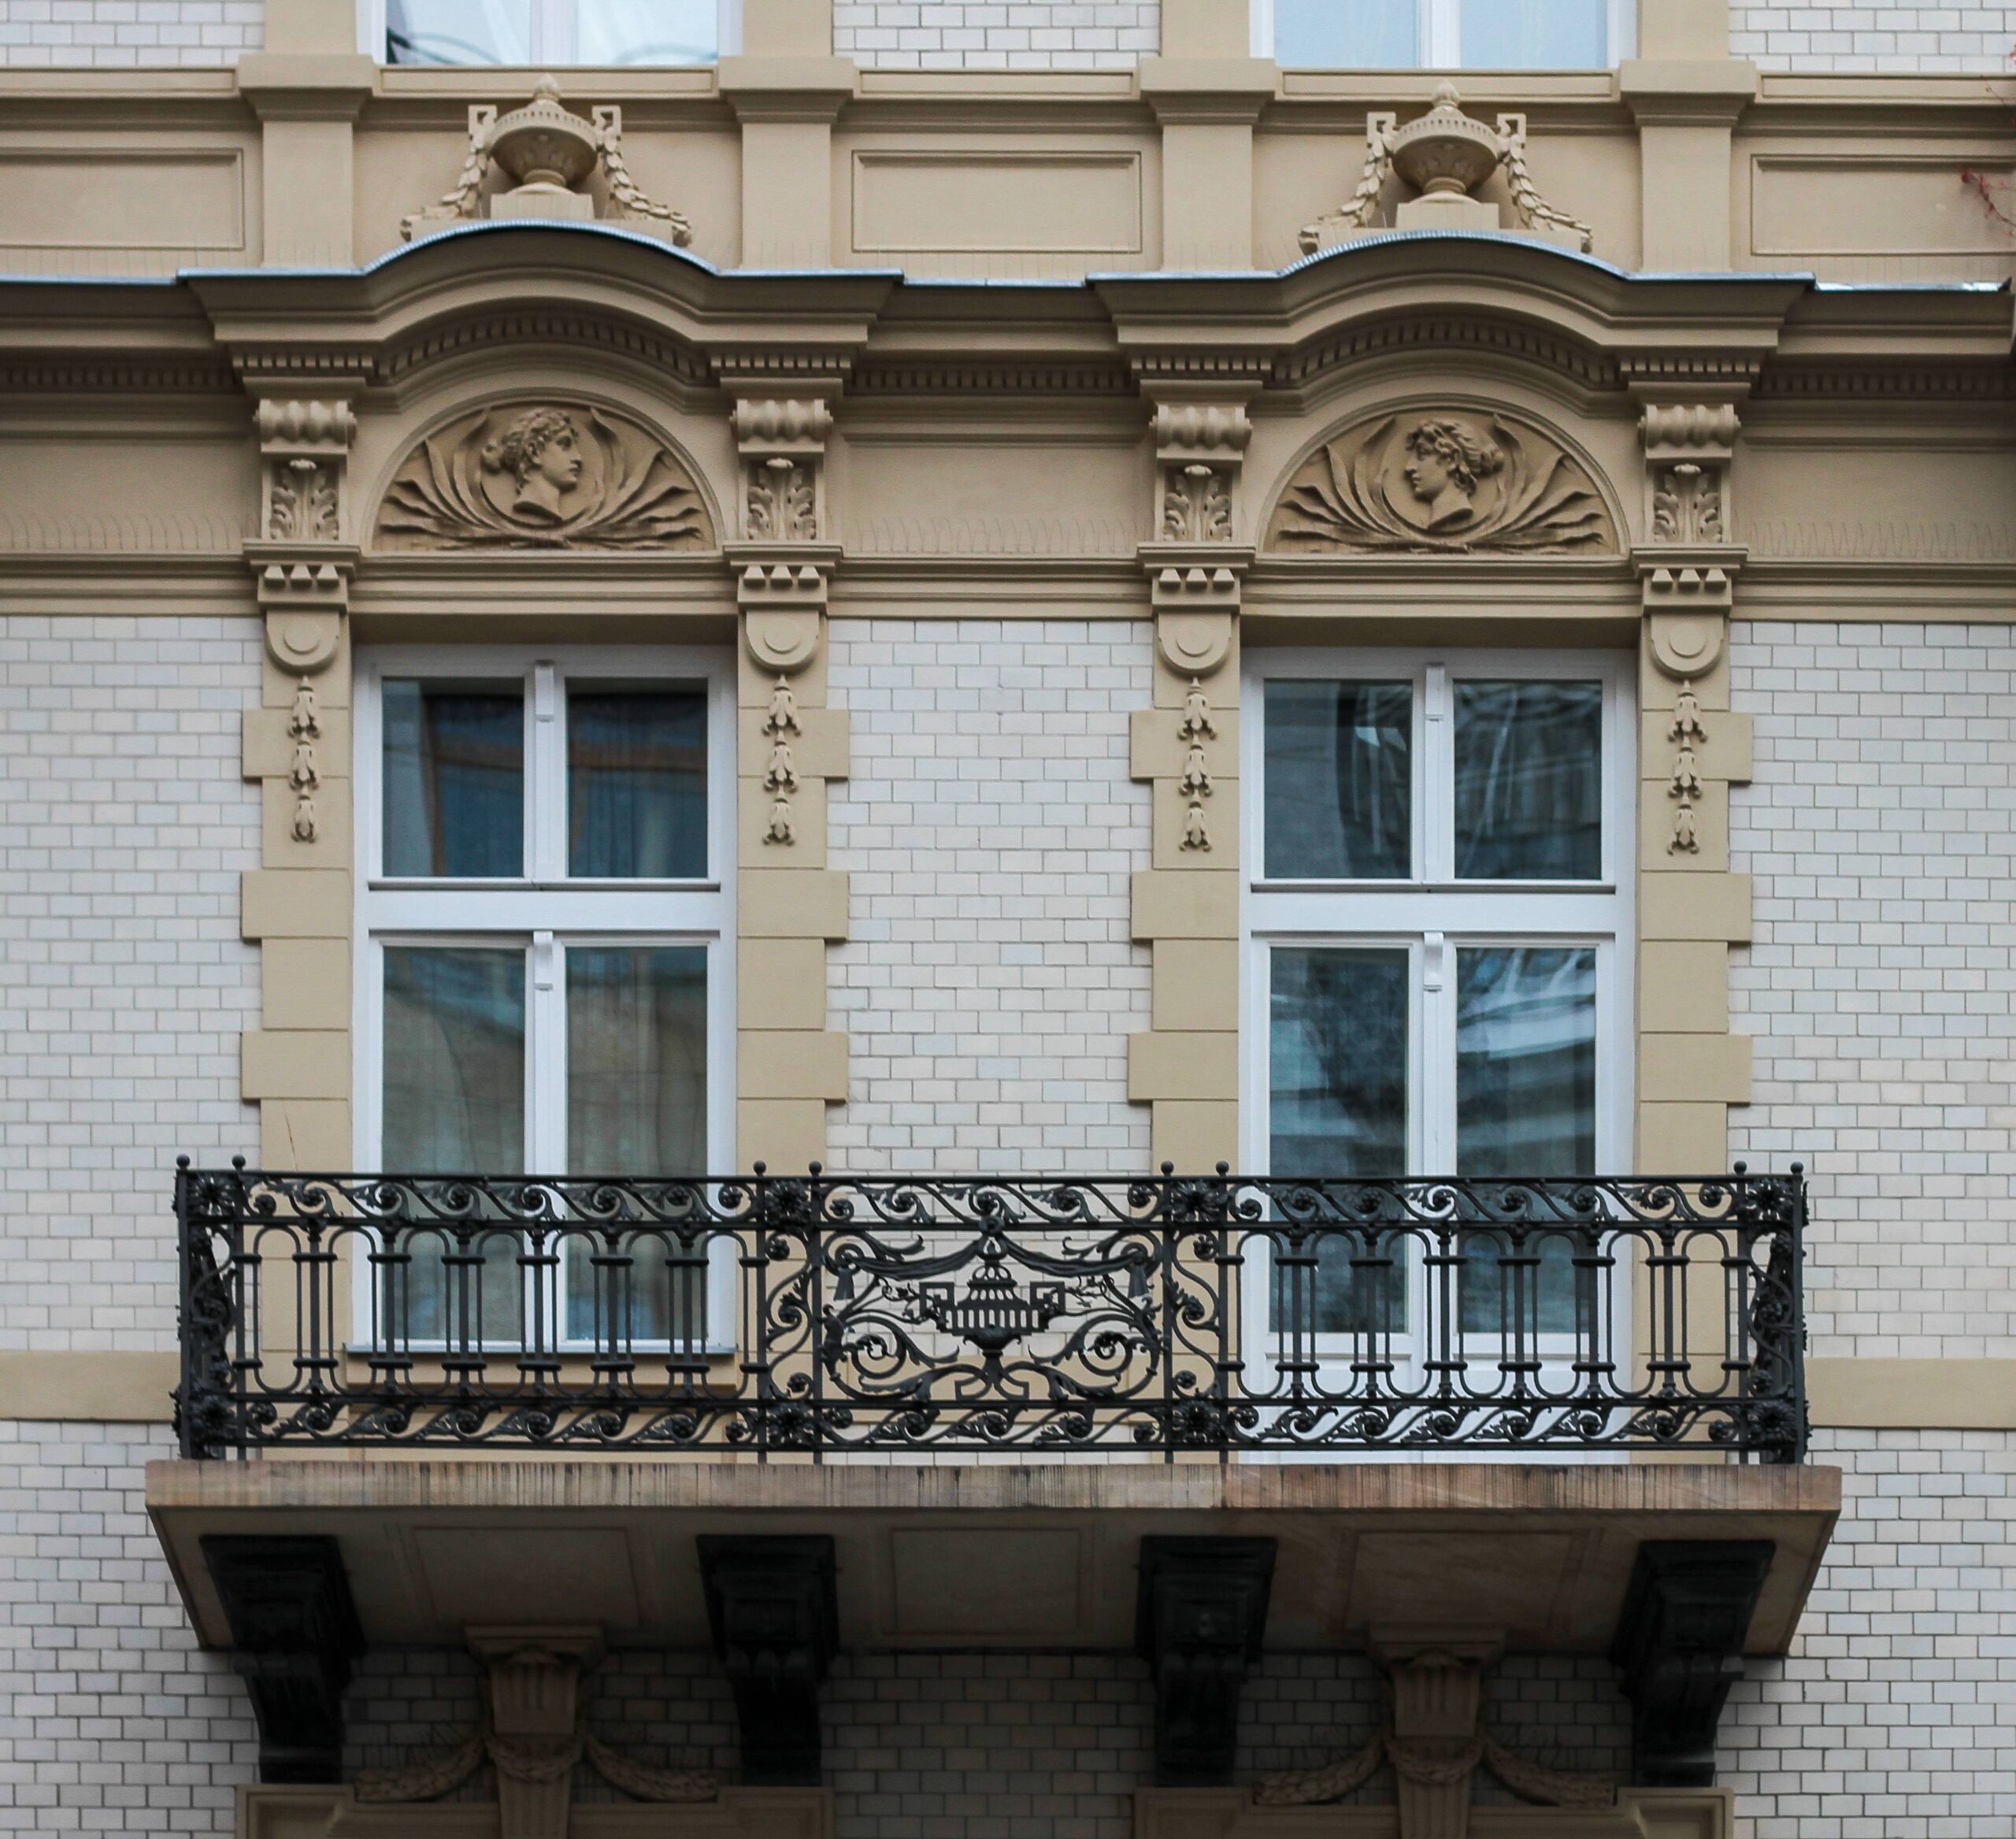 Podwójny boczny balkon II-go piętra. Boniowana oprawa okien. Naczółki z płaskorzeźbami. Fot. Wojciech Kmieć 2022 r., źródło: AOD III.